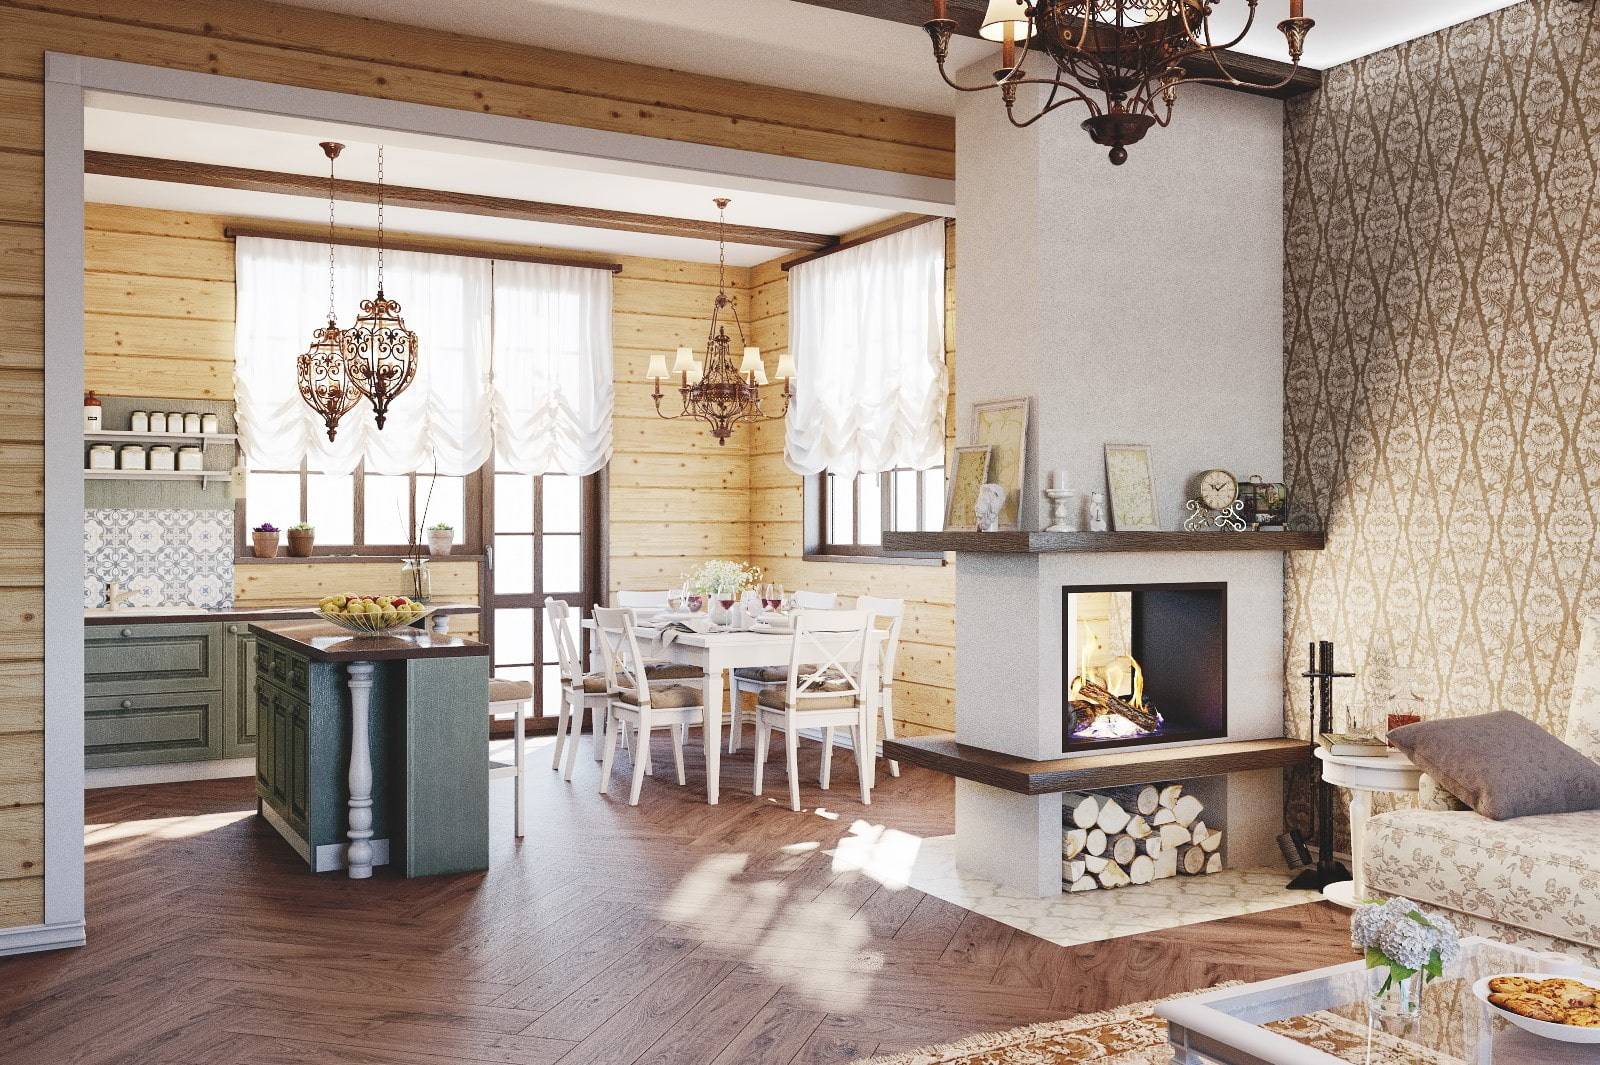 Дизайн кухни с печкой в частном доме (40 фото) - пошив штор, изготовление мебели.